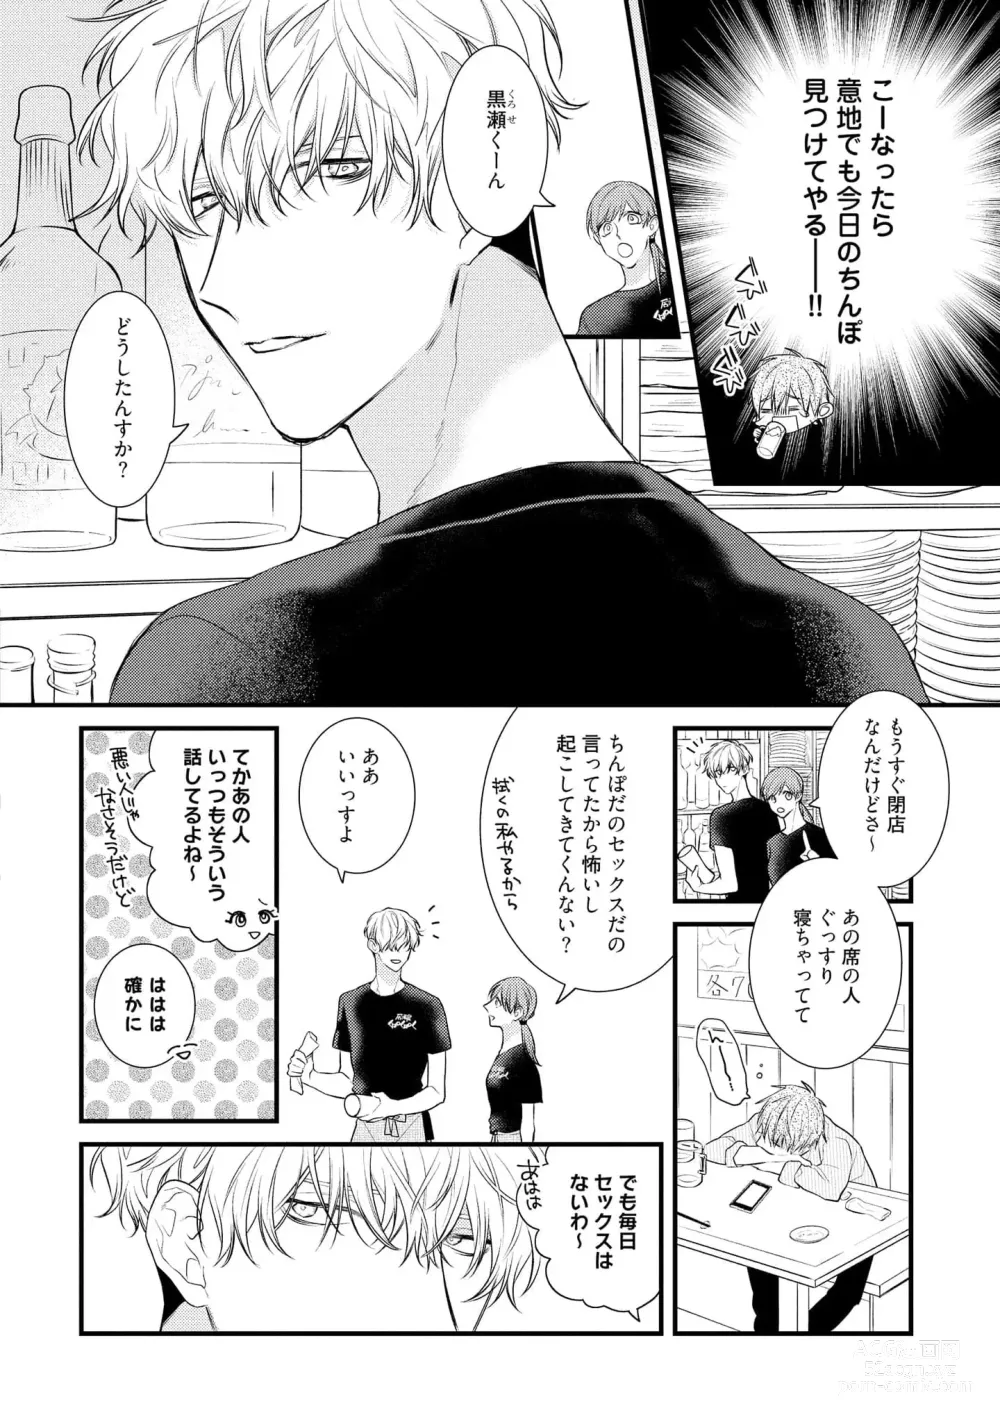 Page 10 of manga Ecchi wa shuu 7 Kibou Desu!